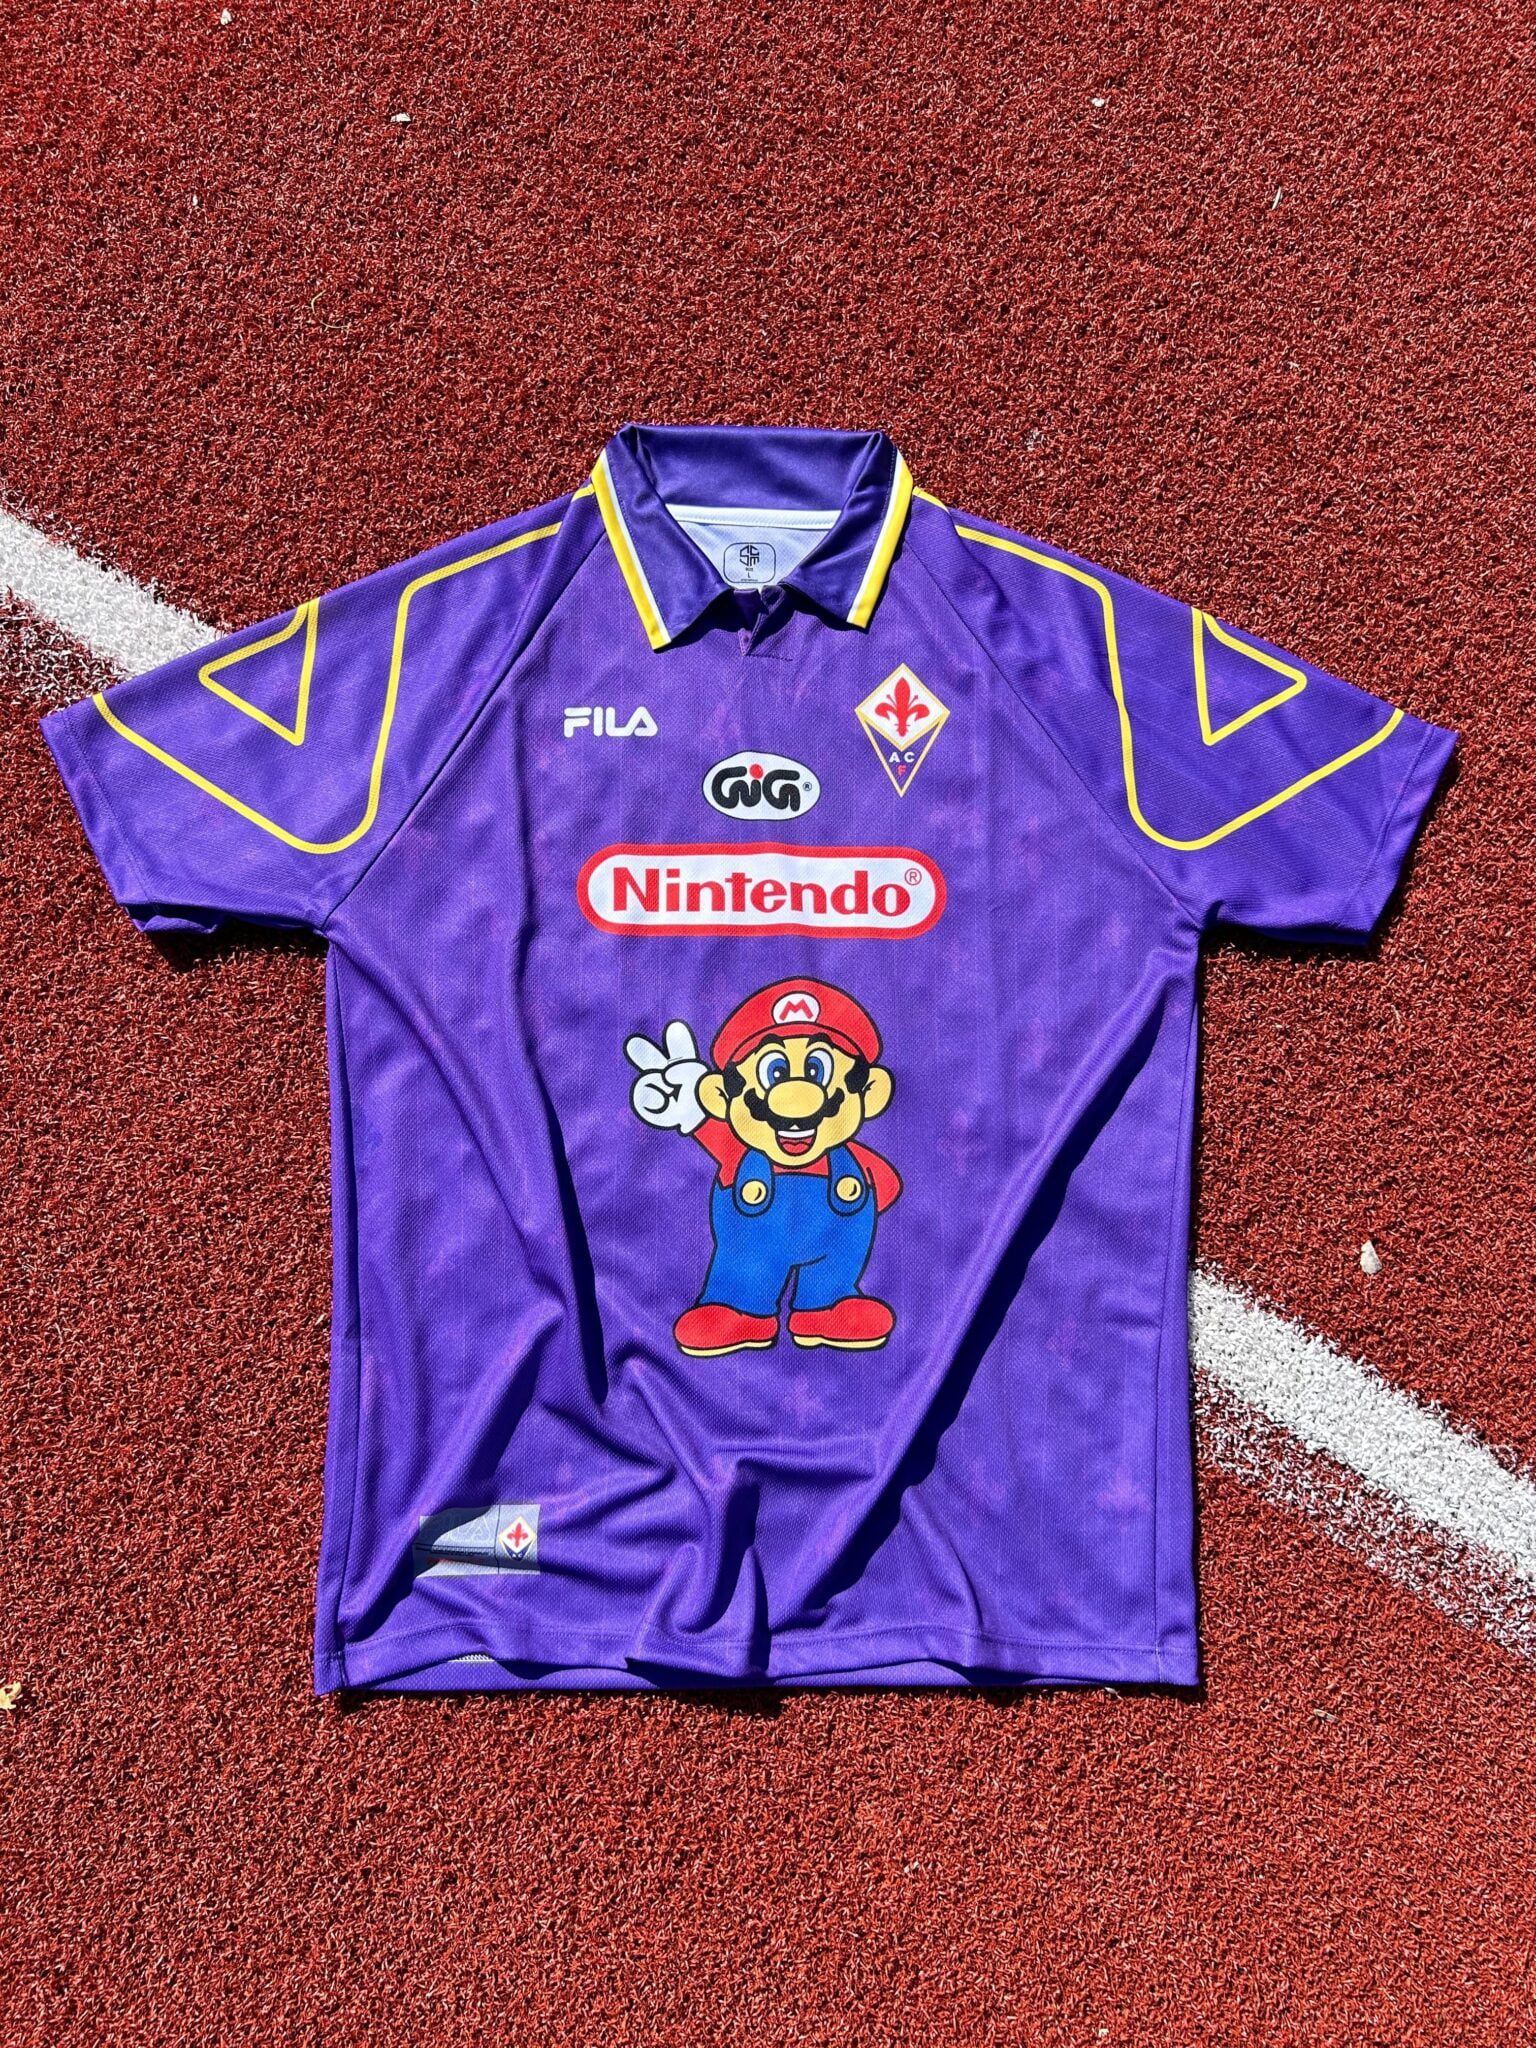 AFC Fiorentina Calcio Home Maglia 1997/1998 Special Jersey Retro Shirt Italy Super Mario Viola - Sport Club Memories